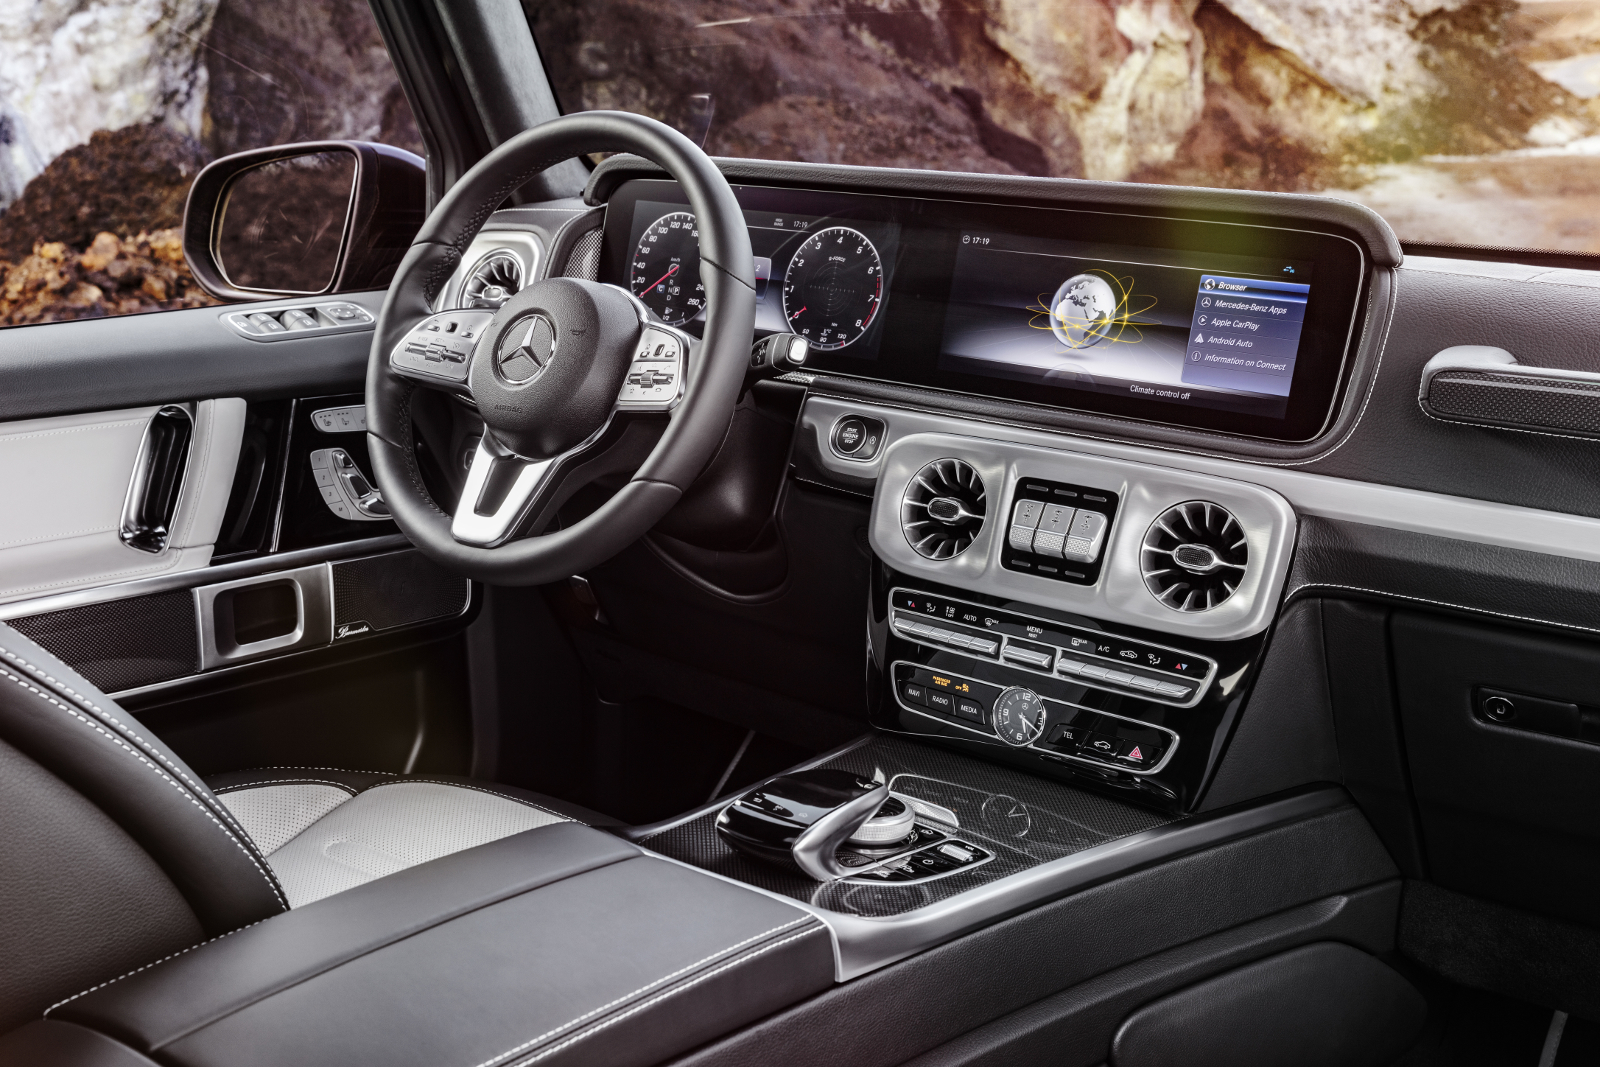 Die neue Mercedes-Benz G-Klasse von 2018. - Das hat nichts mehr mit der Ur-G-Klasse gemein. Luxus und Technik pur.